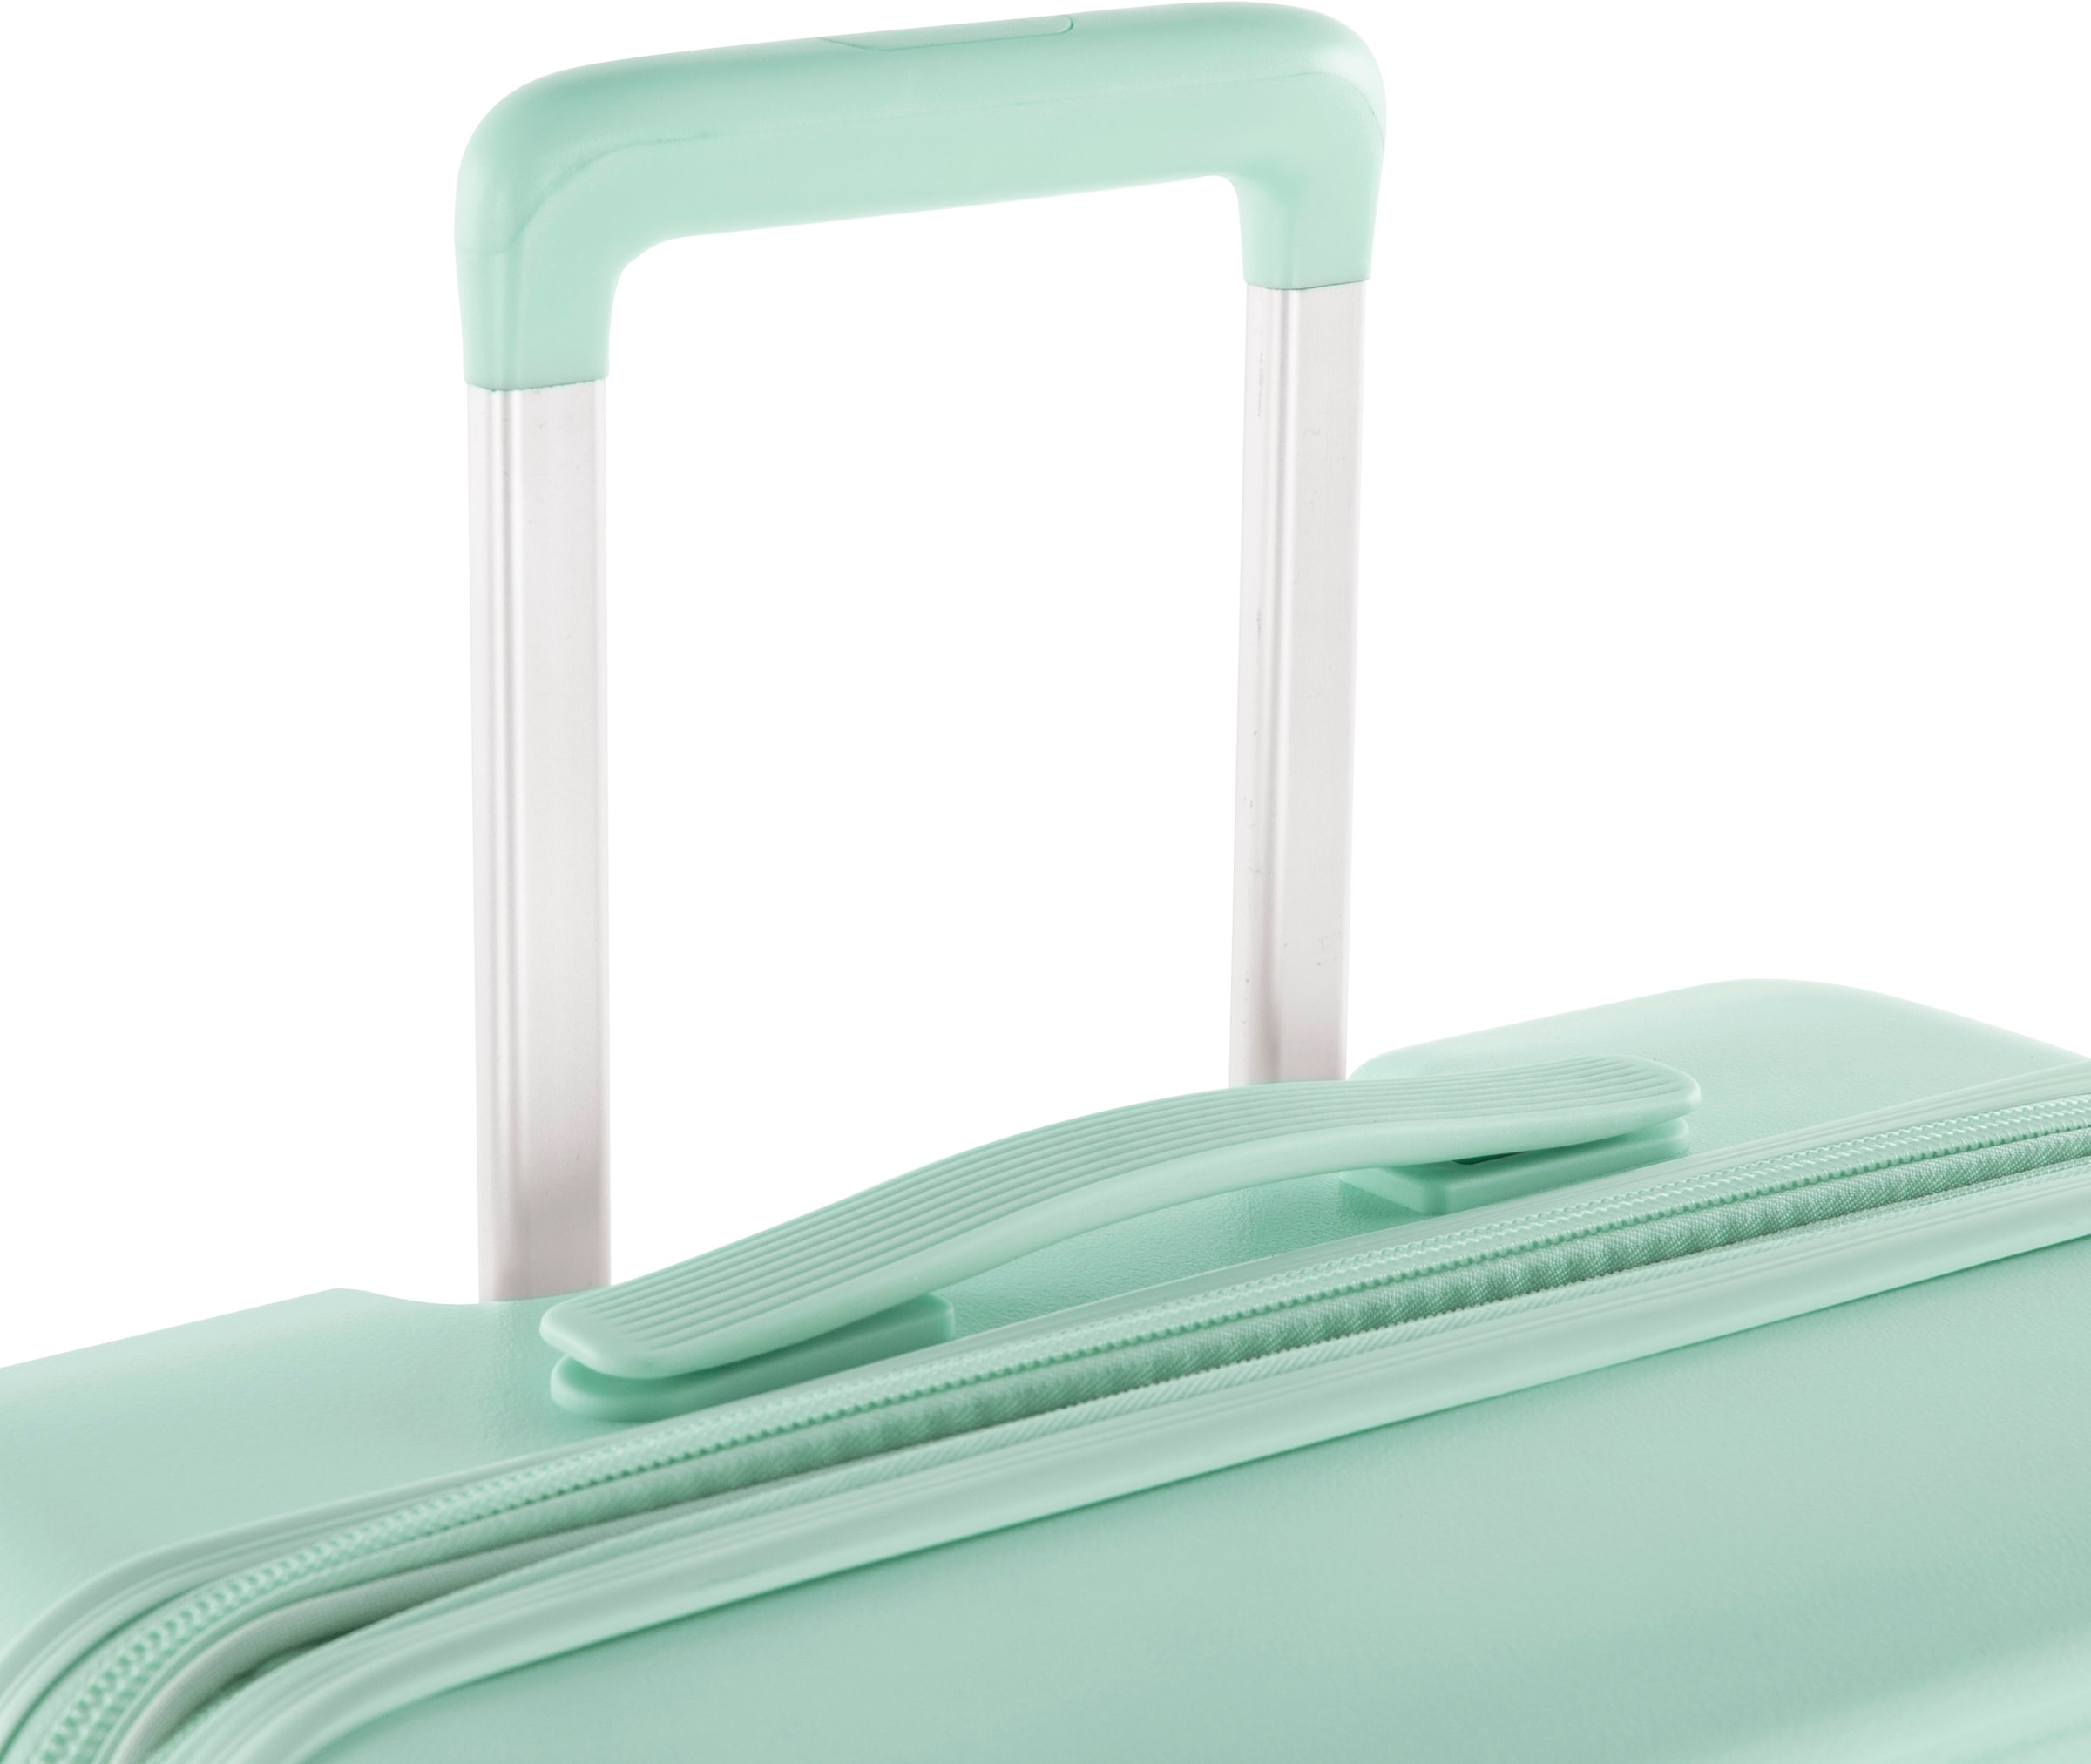 Heys Hartschalen-Trolley »Pastel, 66 cm«, 4 Rollen, Hartschalen-Koffer Koffer mittel groß TSA Schloss Volumenerweiterung